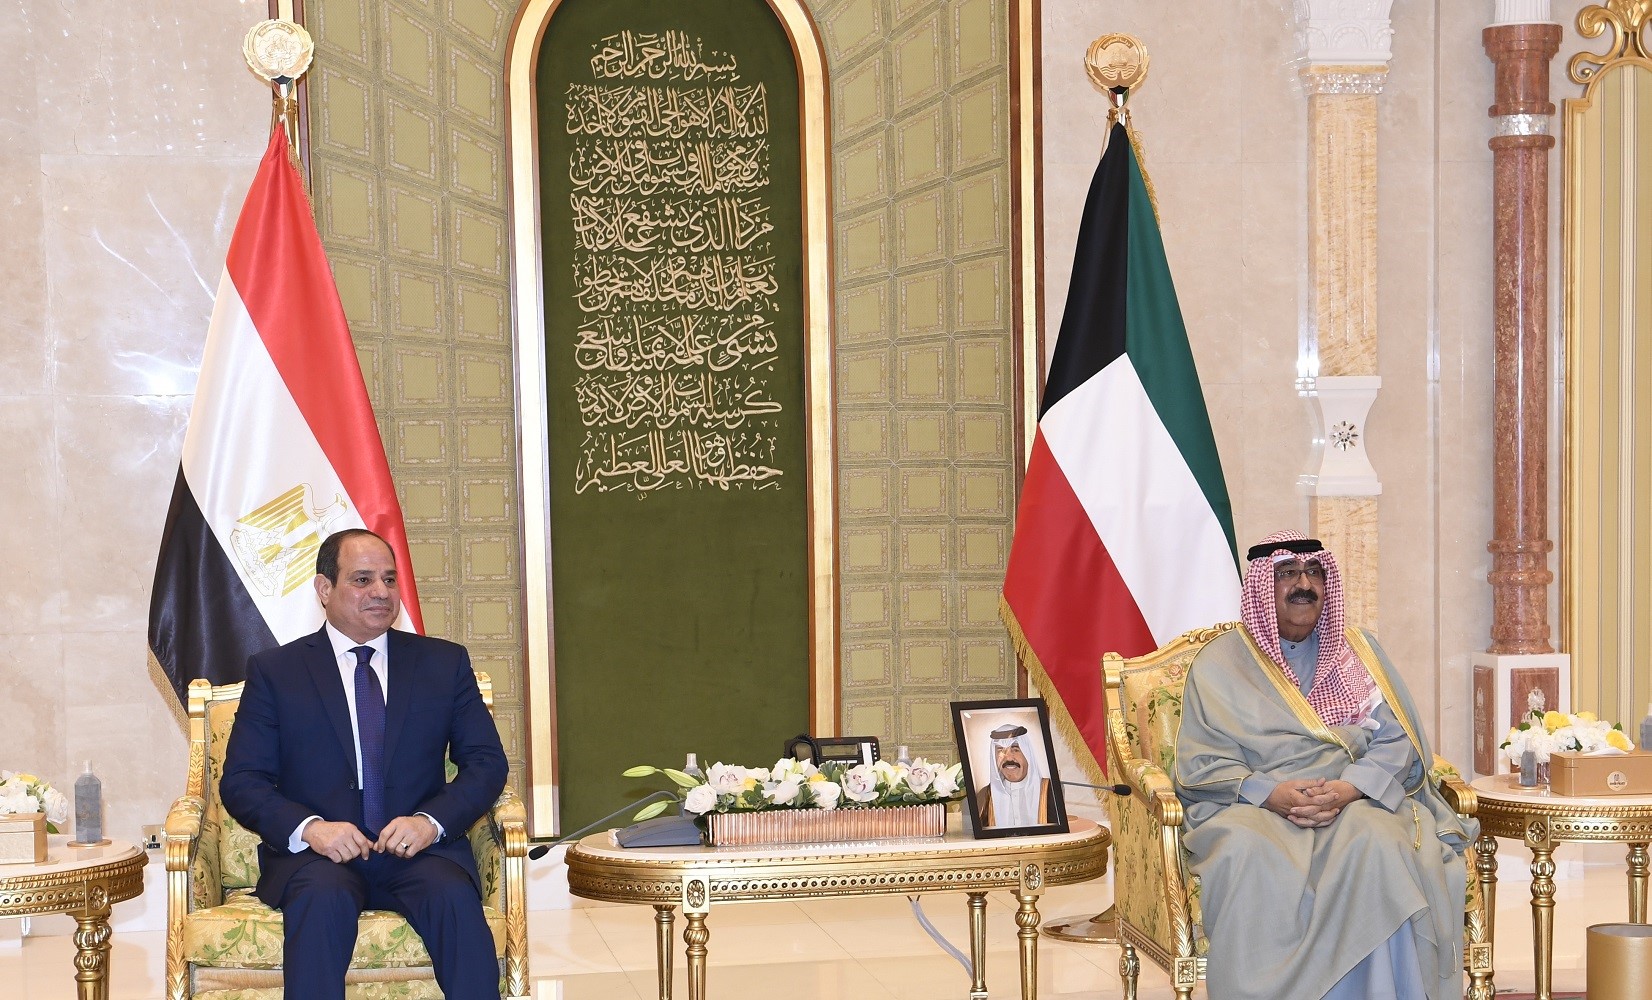 Son Altesse l'Emir, Cheikh Mechaal Al-Ahmad Al-Jaber Al-Sabah avec le président égyptien Abdel Fattah El-Sissi